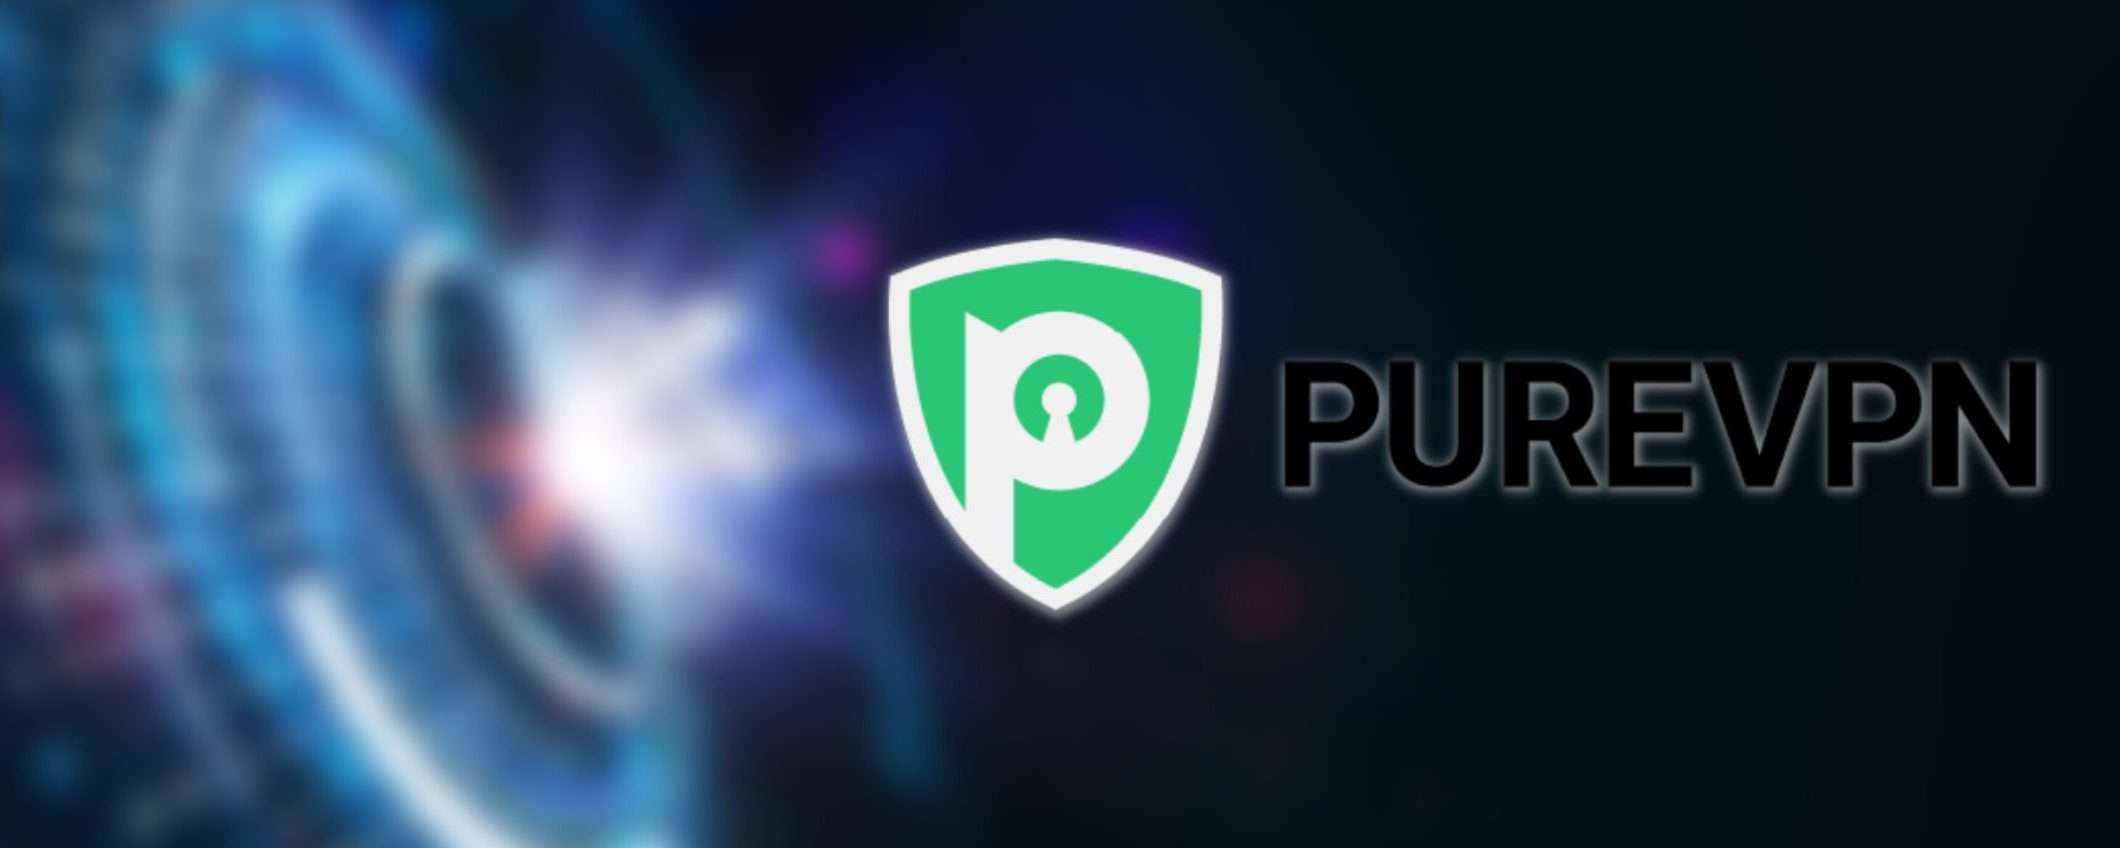 PureVPN: la VPN velocissima e sicura a meno di 2 euro al mese